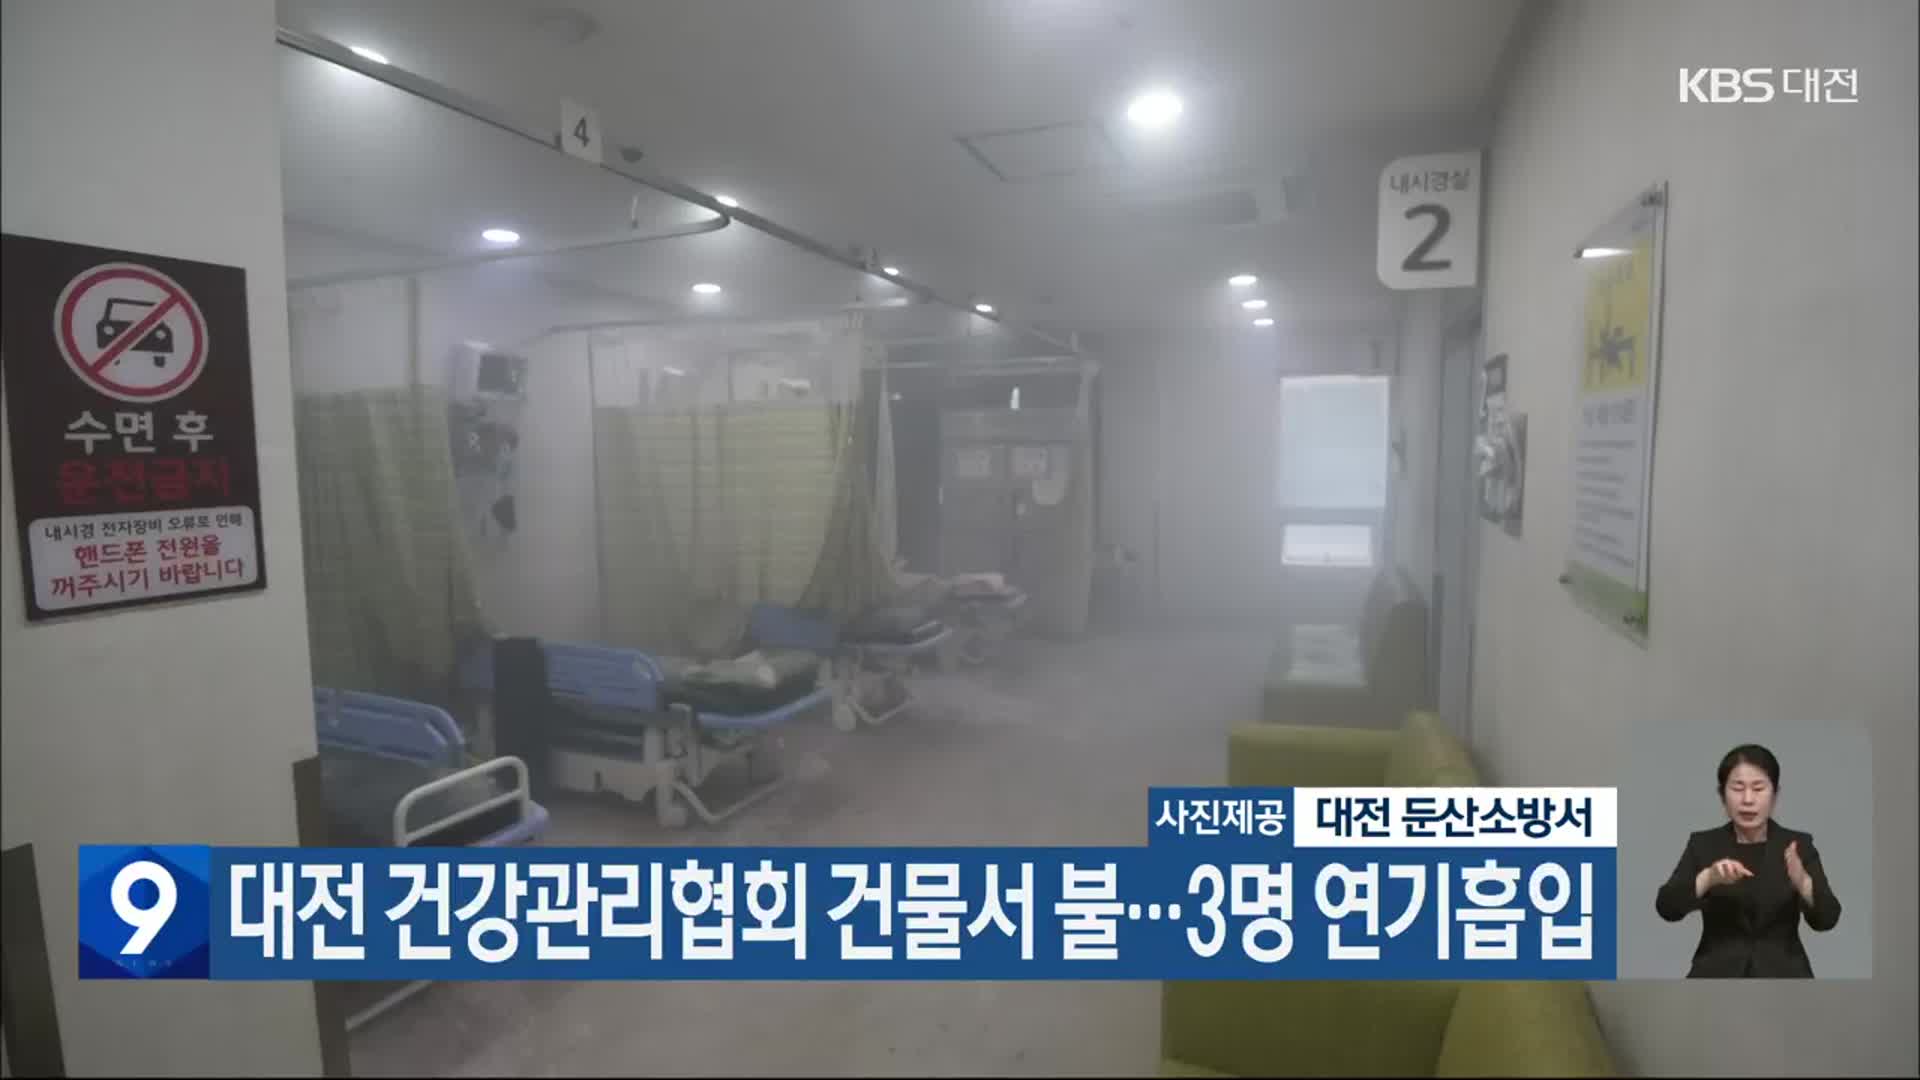 대전 건강관리협회 건물서 불…3명 연기흡입